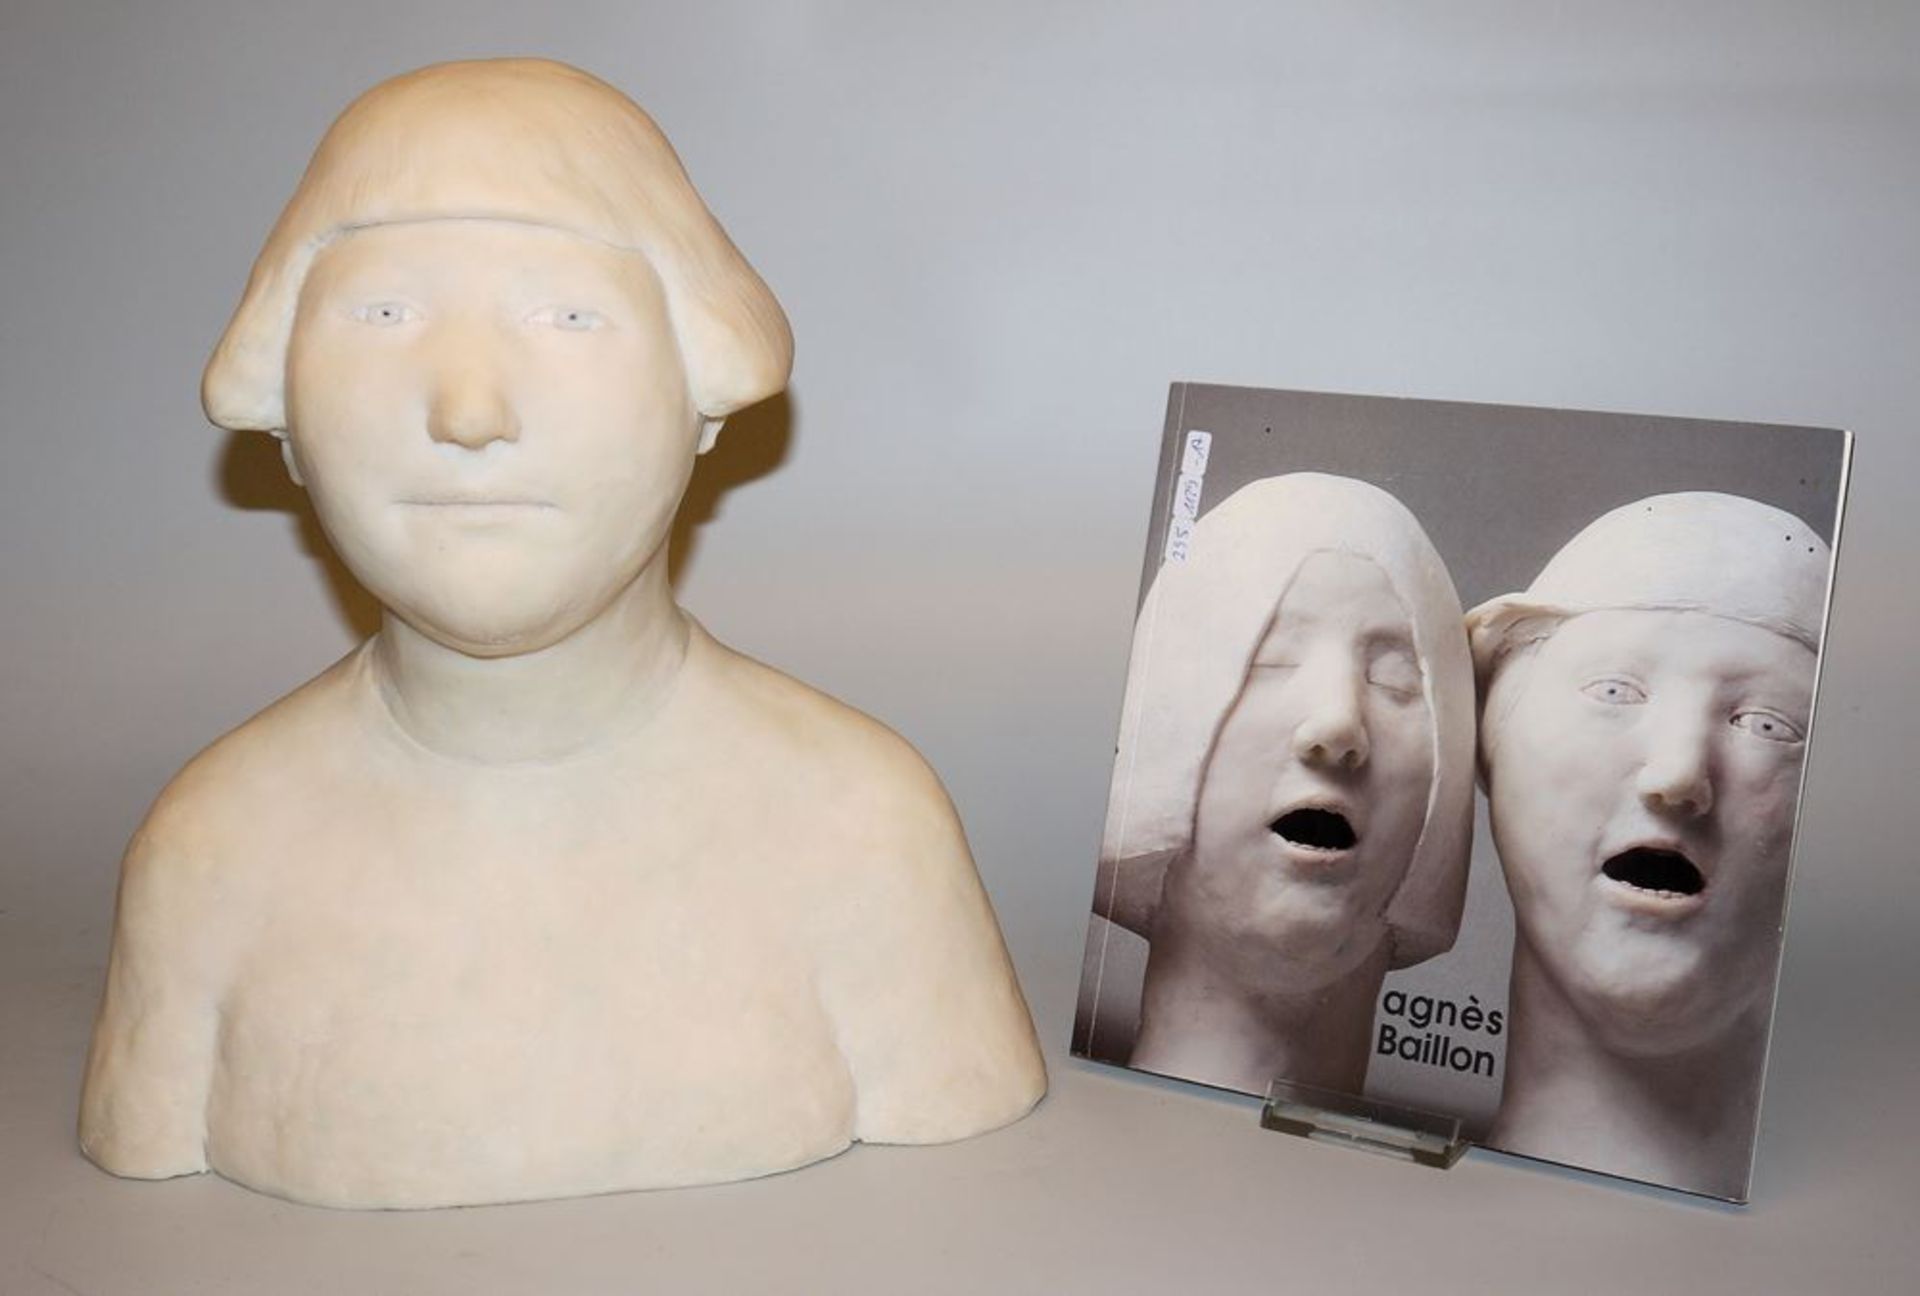 Agnès Baillon, Buste de femme, sculpture from 2003, with catalogue